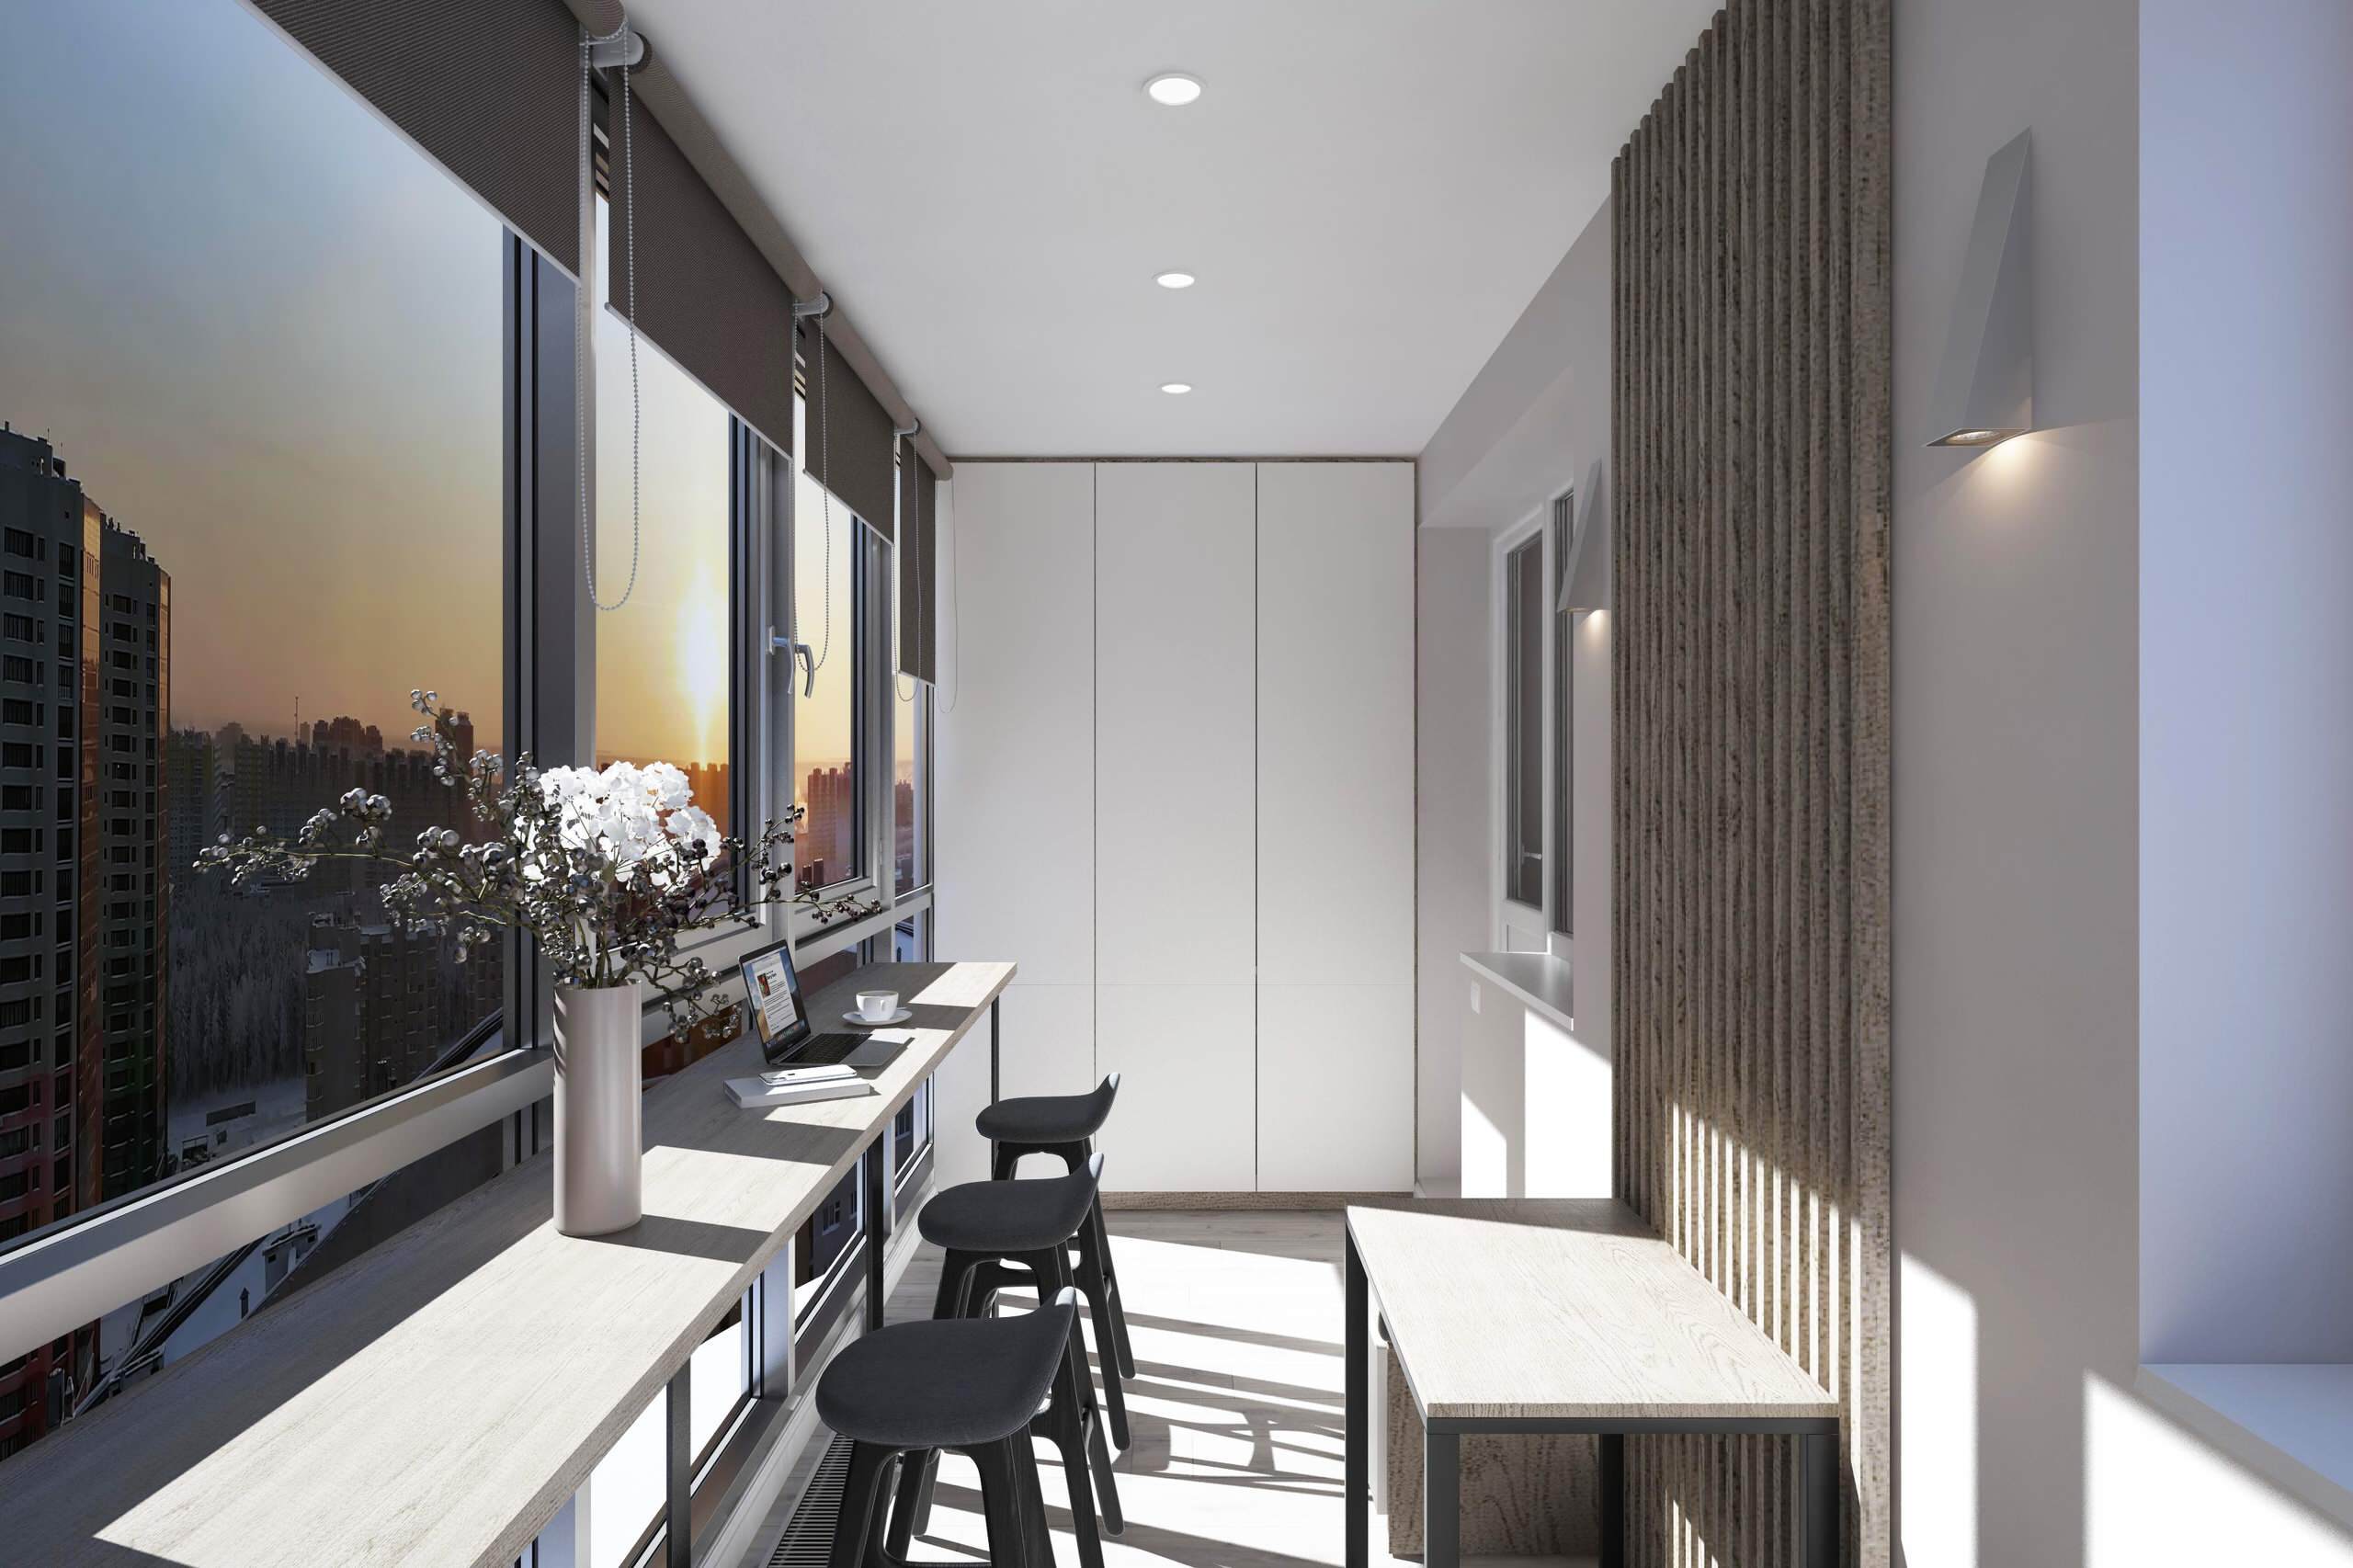 Интерьер кухни с балконом, световыми линиями, рейками с подсветкой и подсветкой светодиодной в современном стиле